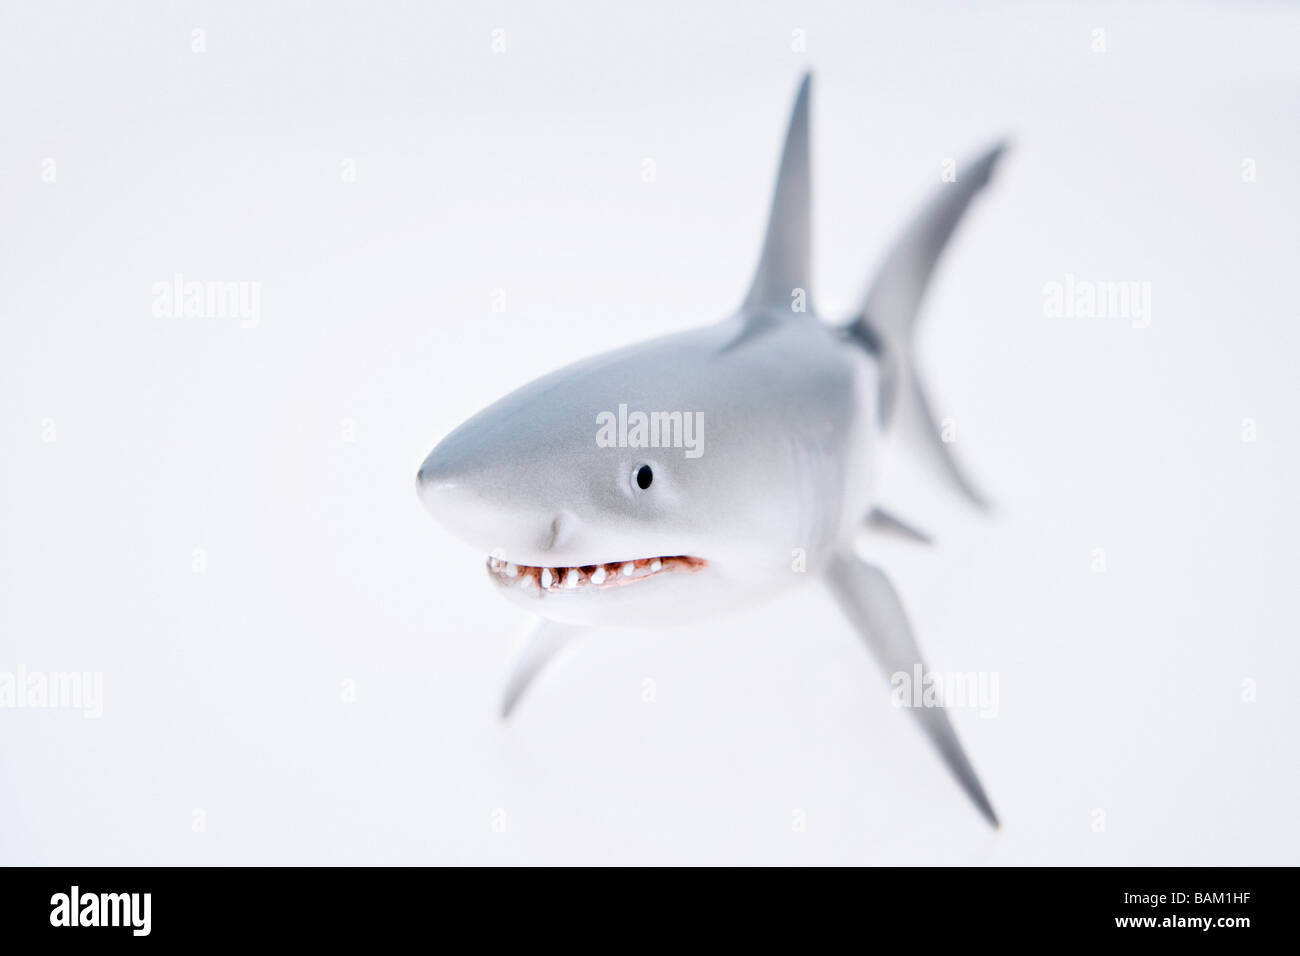 Tiburón de juguete Foto de stock